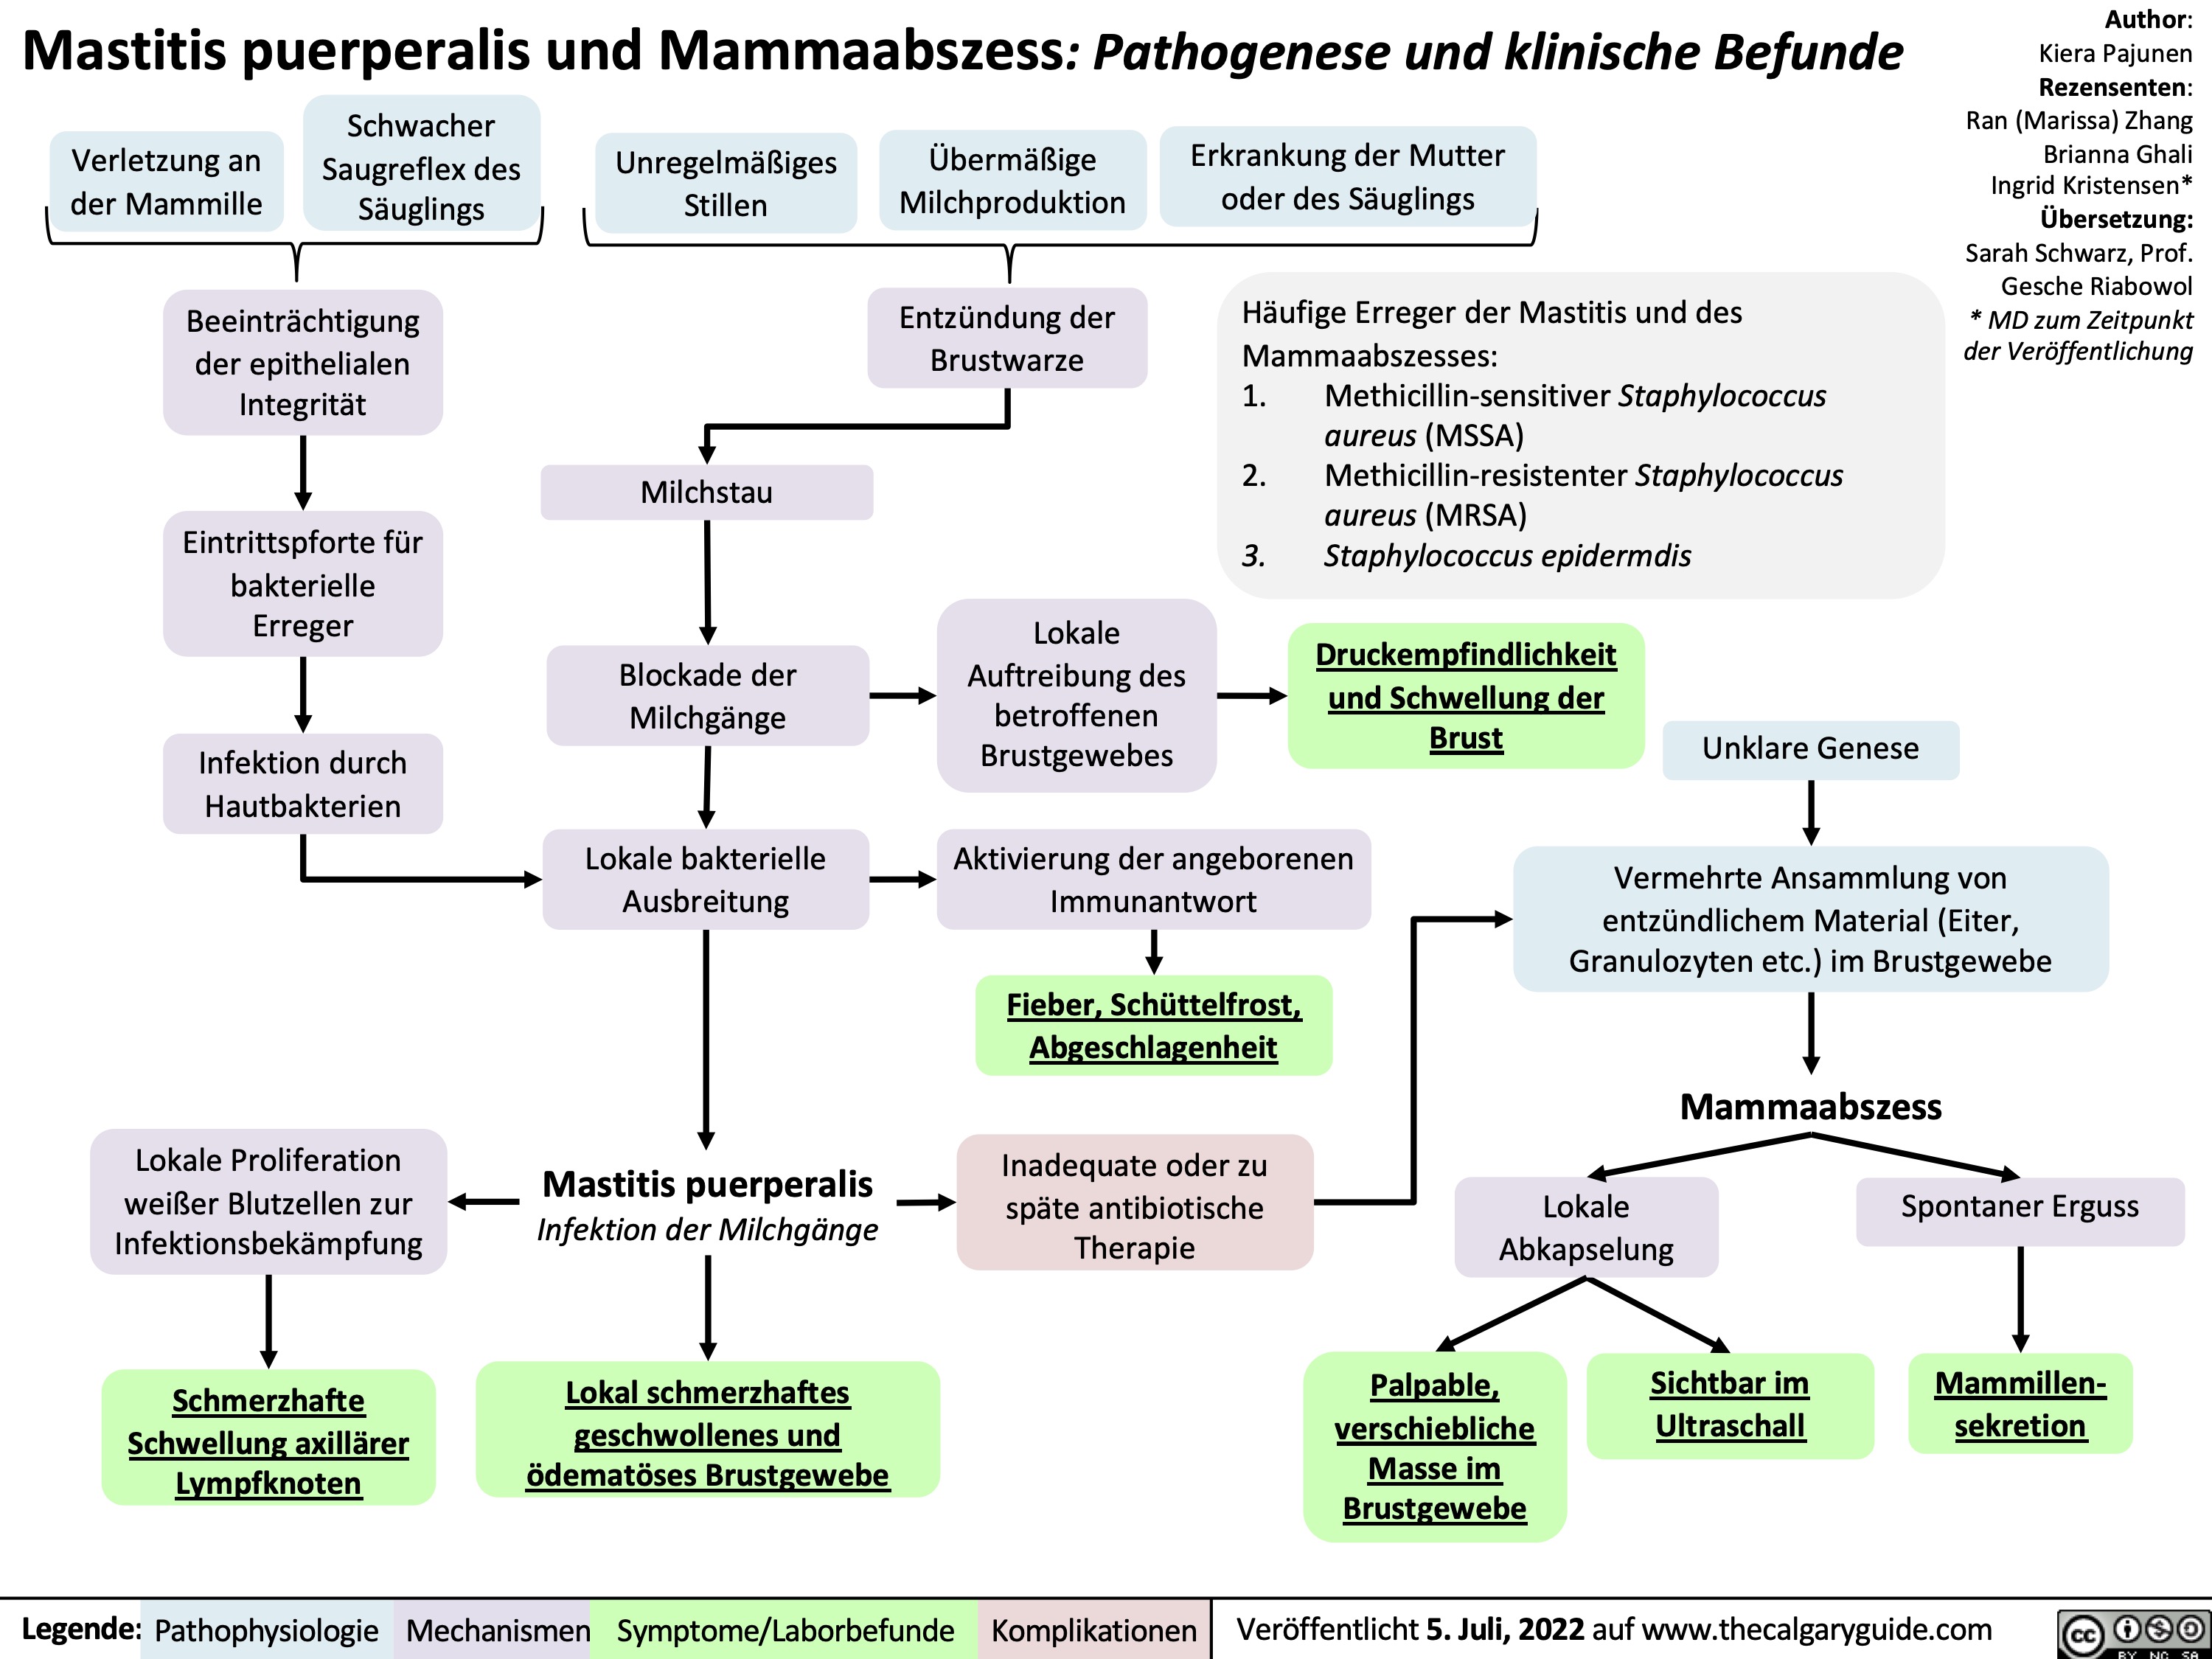 Mastitis puerperalis und Mammaabszess: Pathogenese und klinische Befunde